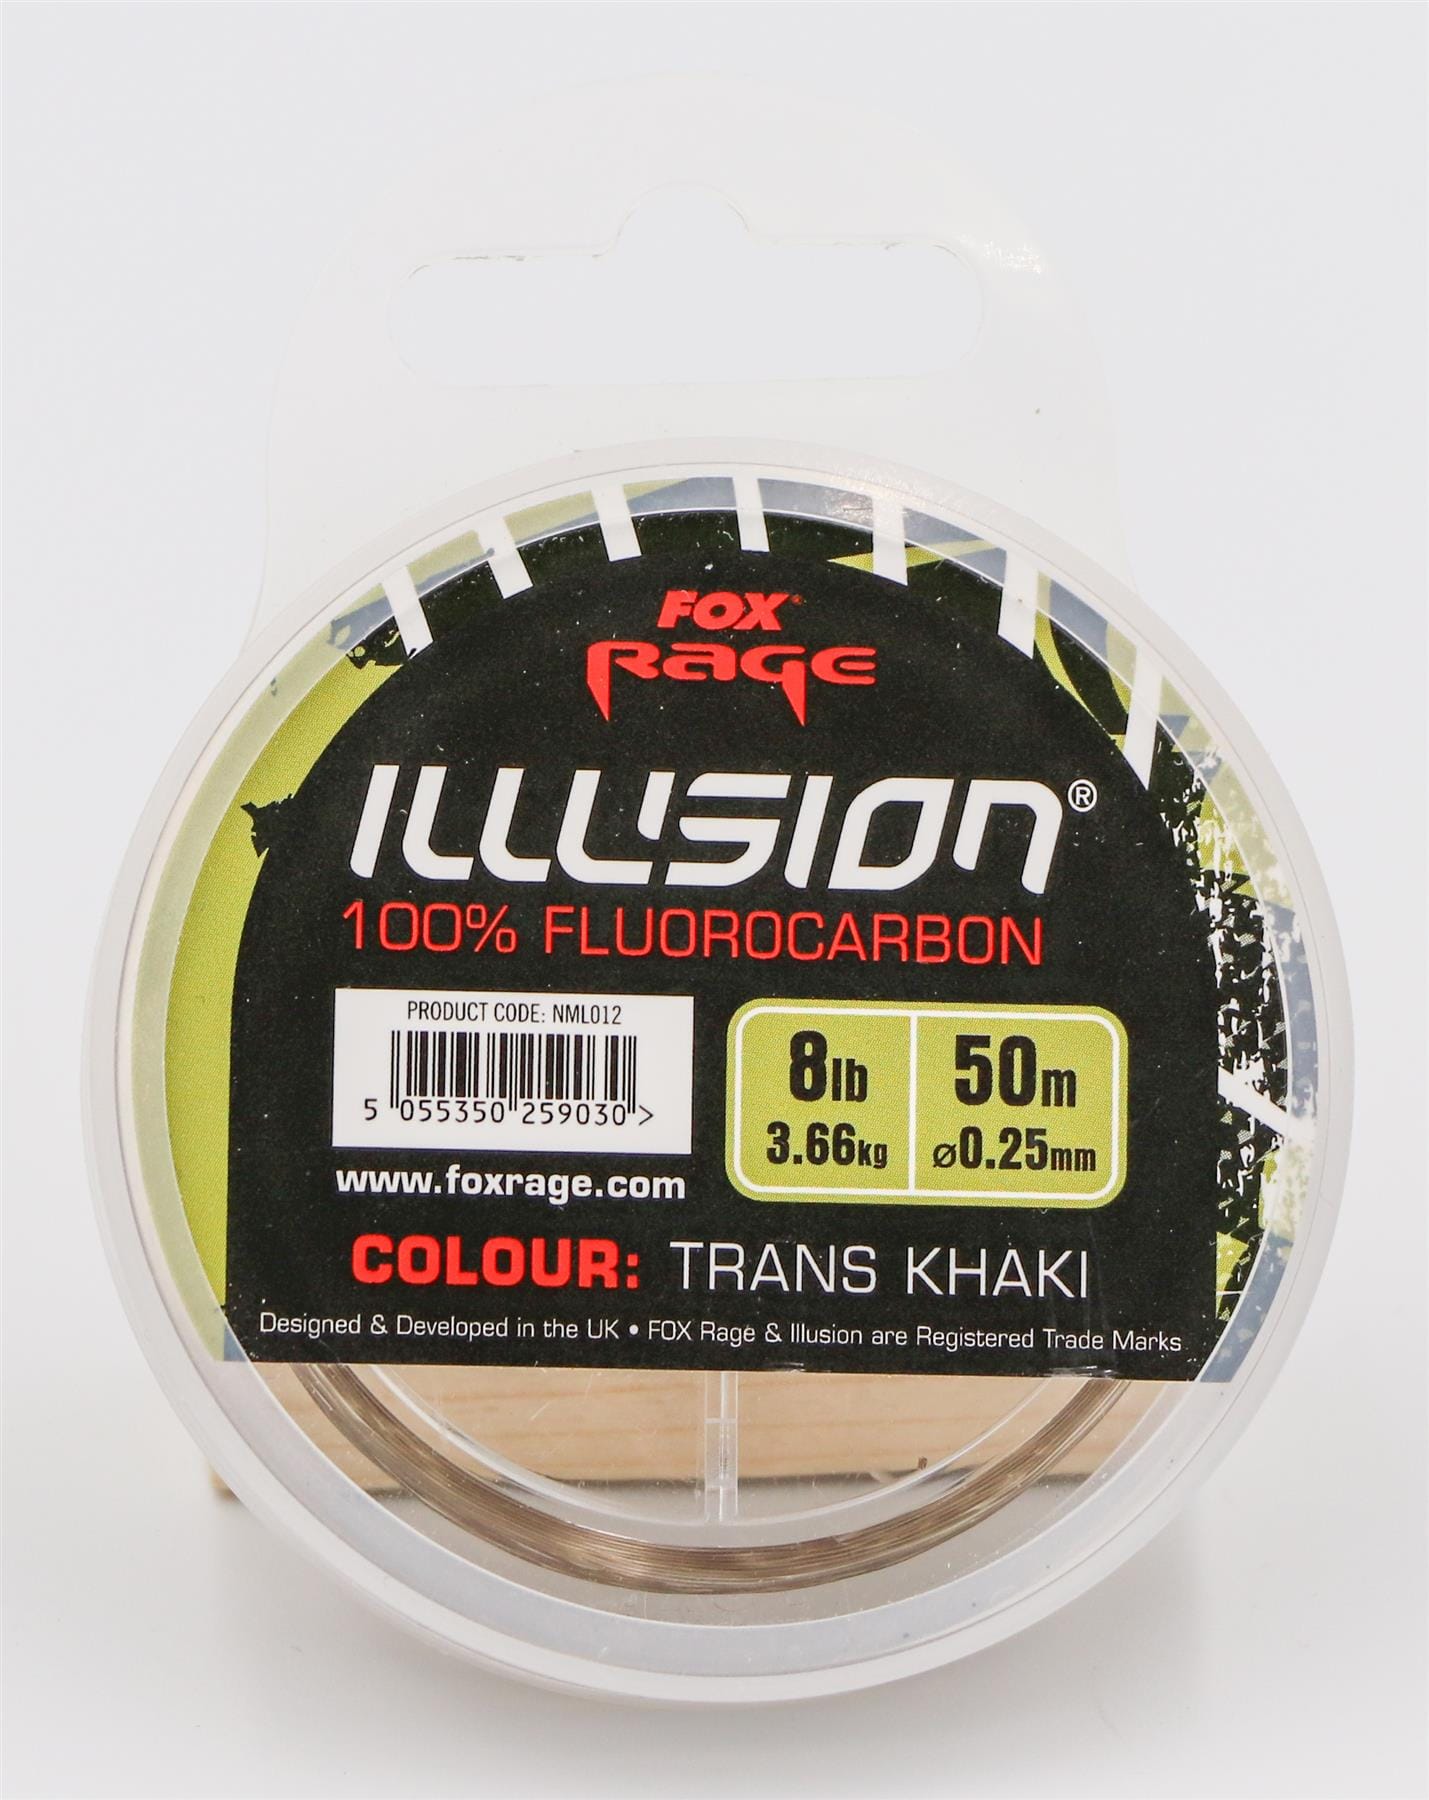 FOX Rage Illusion Soft Flurocarbon - Trans Khaki 0.25mm 3.66kg / 8lbs.